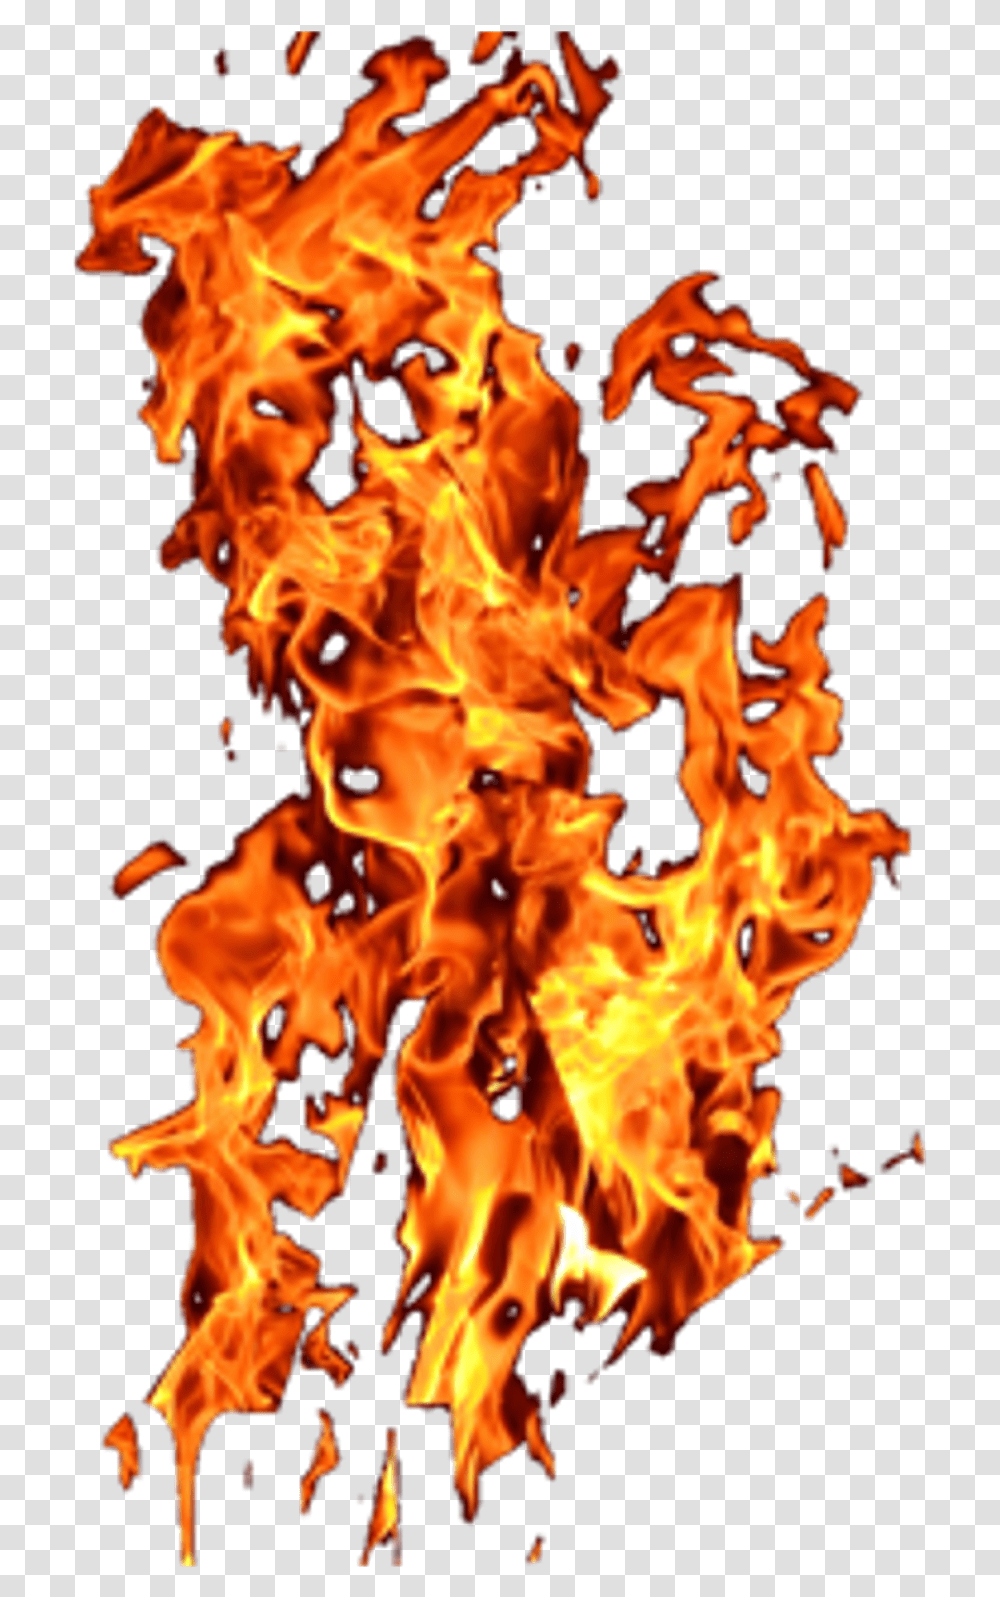 Fire Sparks Picsart Fire Stick, Bonfire, Flame Transparent Png